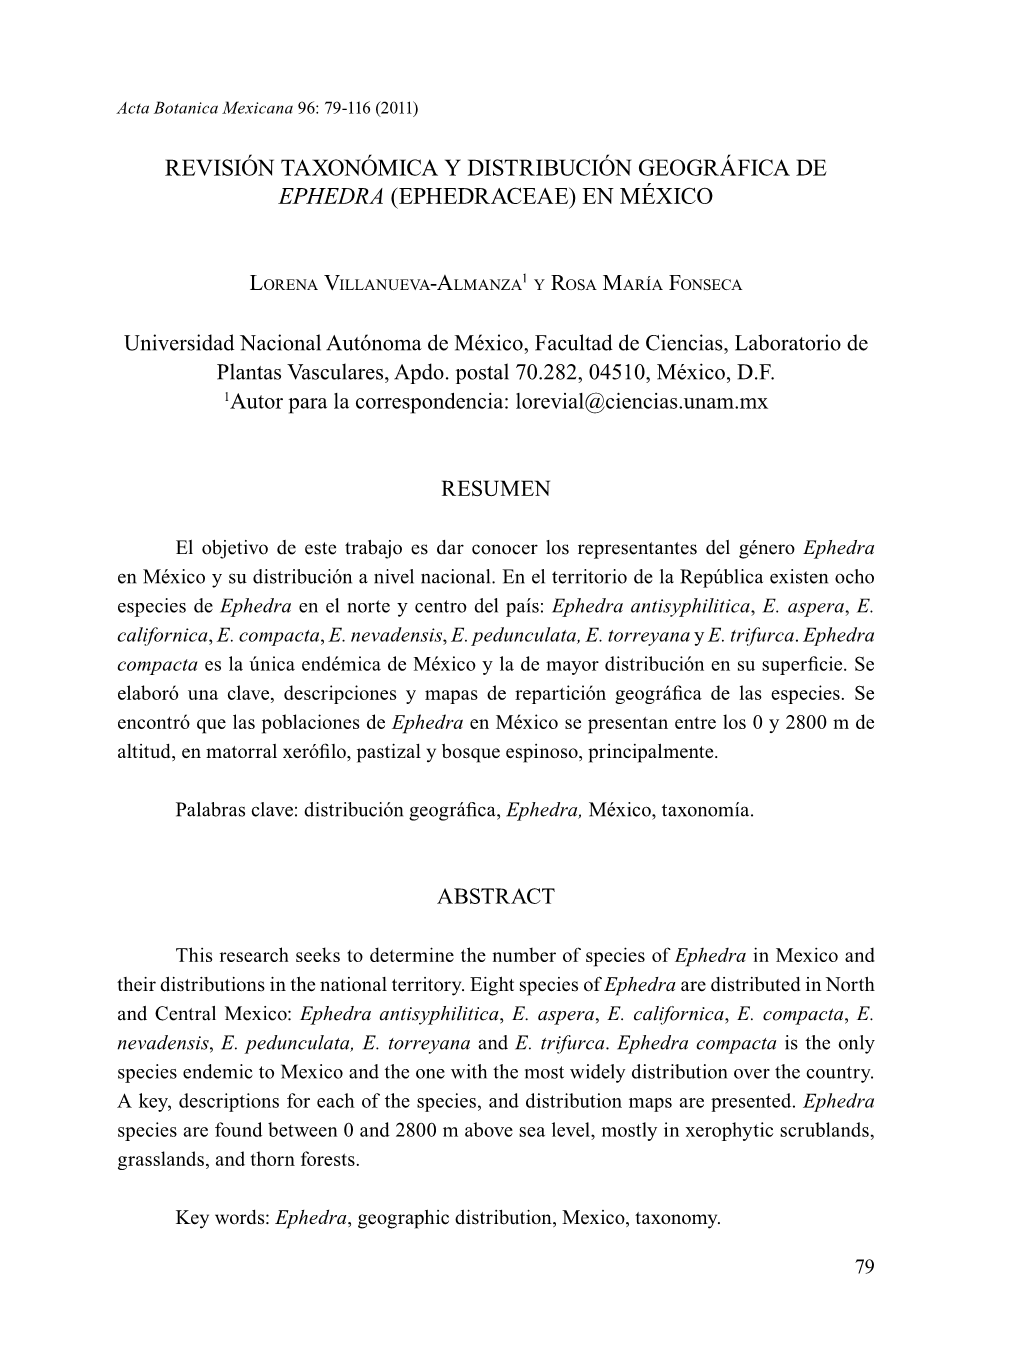 Revisión Taxonómica Y Distribución Geográfica De Ephedra (Ephedraceae) En México